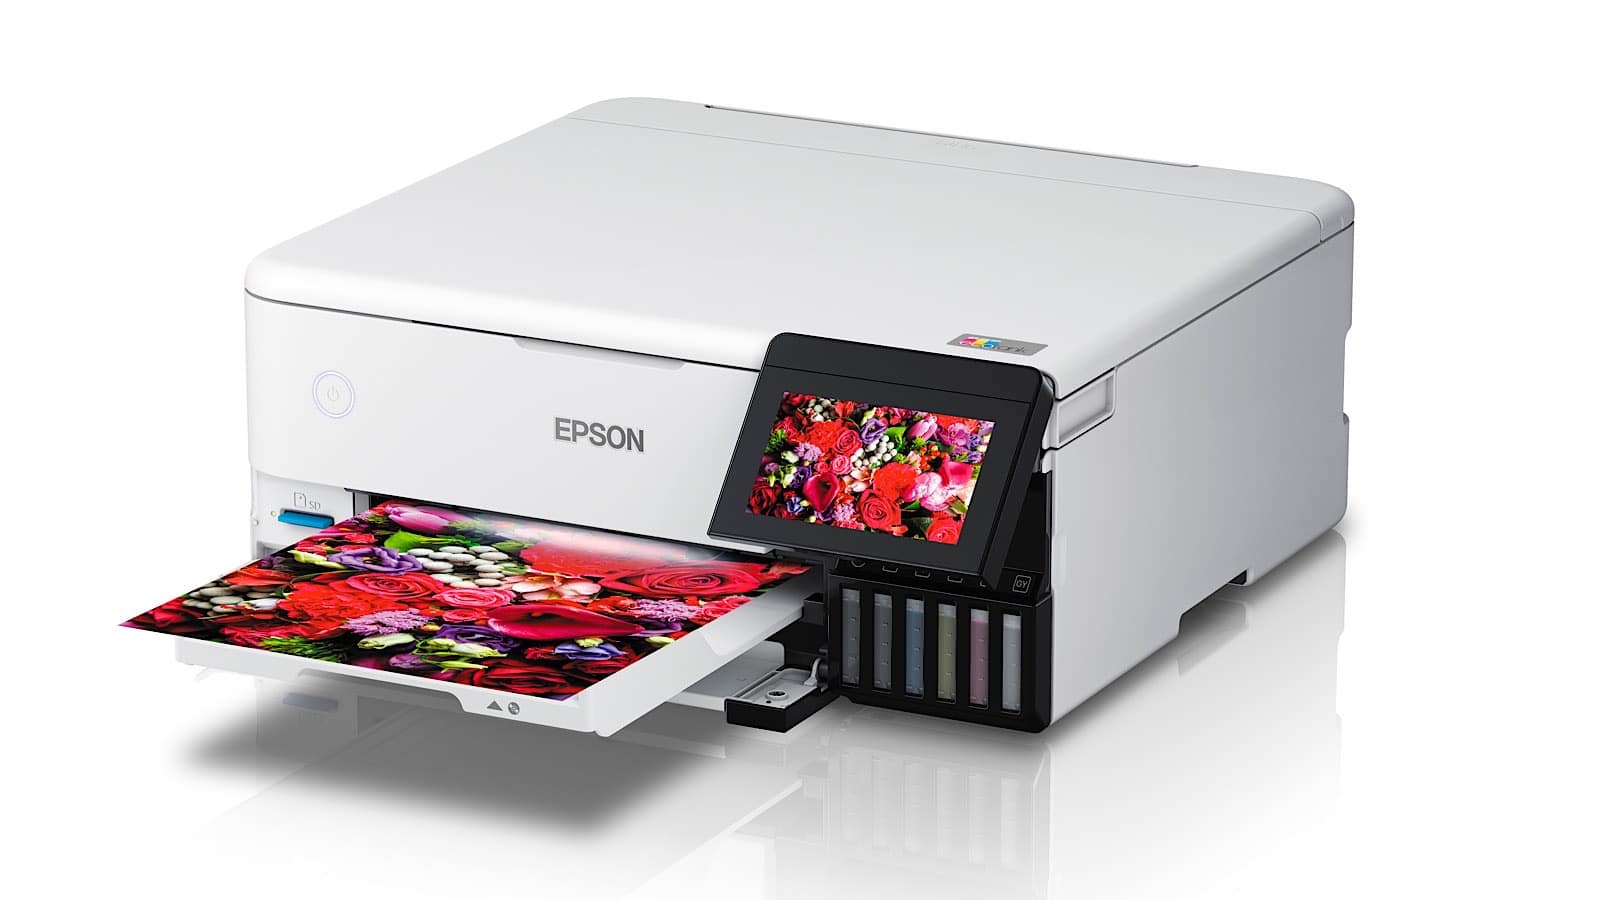 Epson EcoTank for photo printers